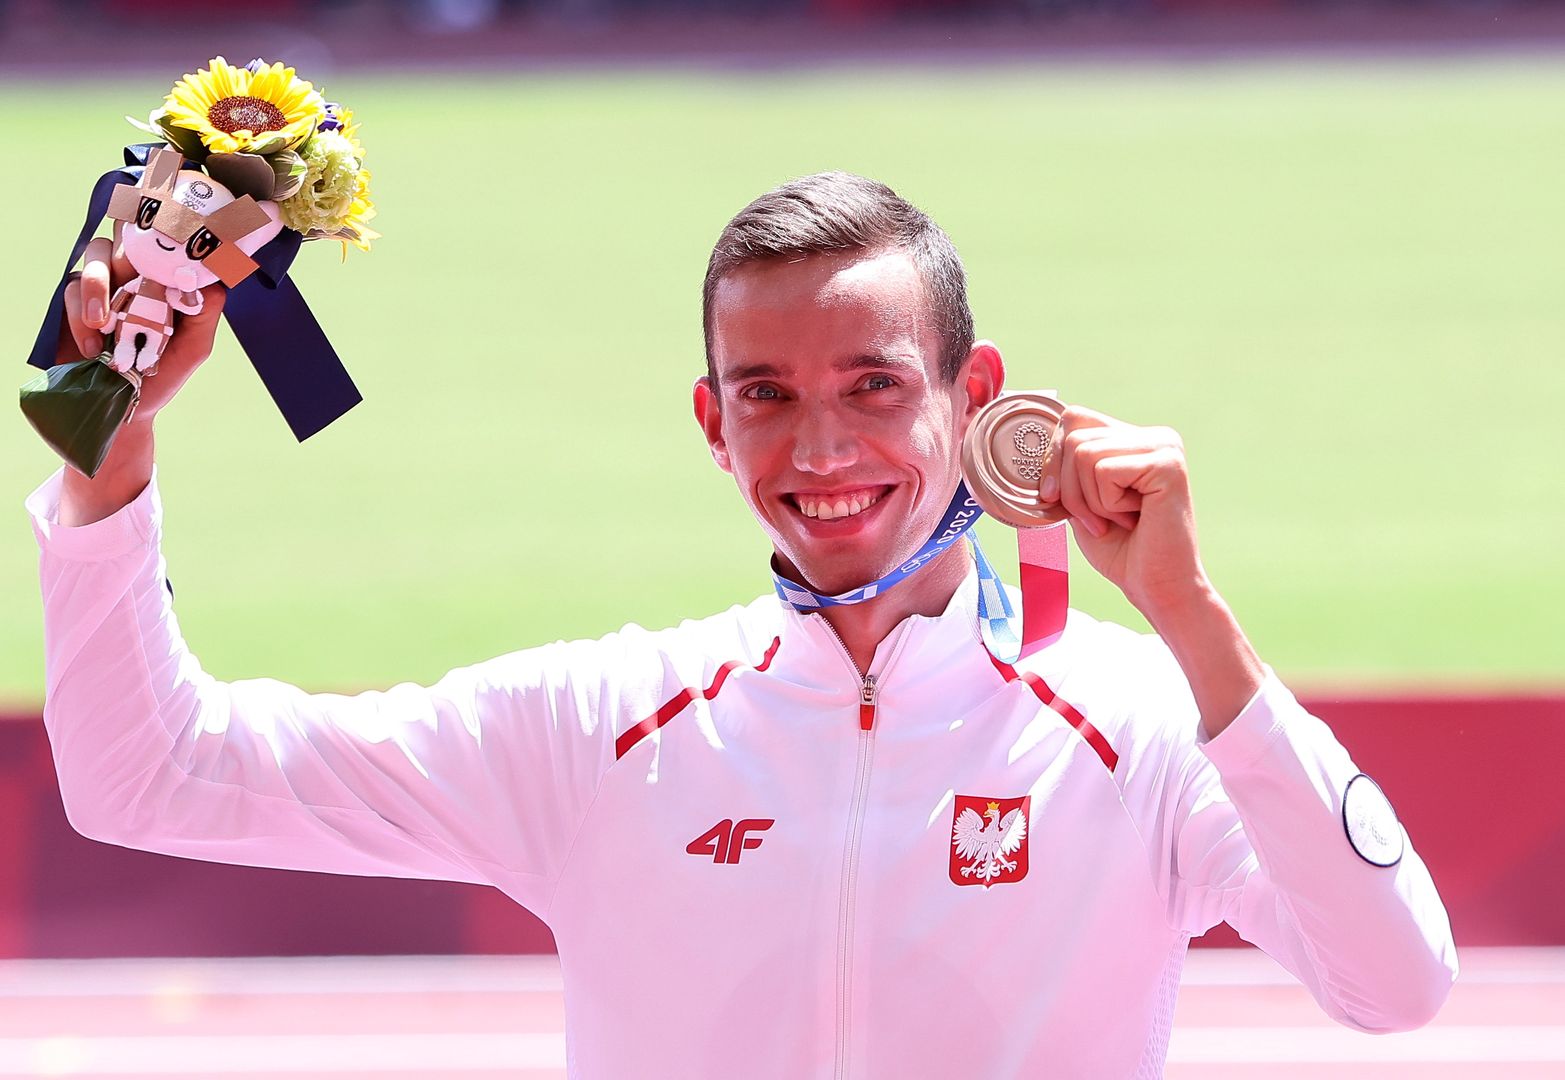 Polski medalista pokazał, że ma duży luz. Udostępnił mema na swój temat